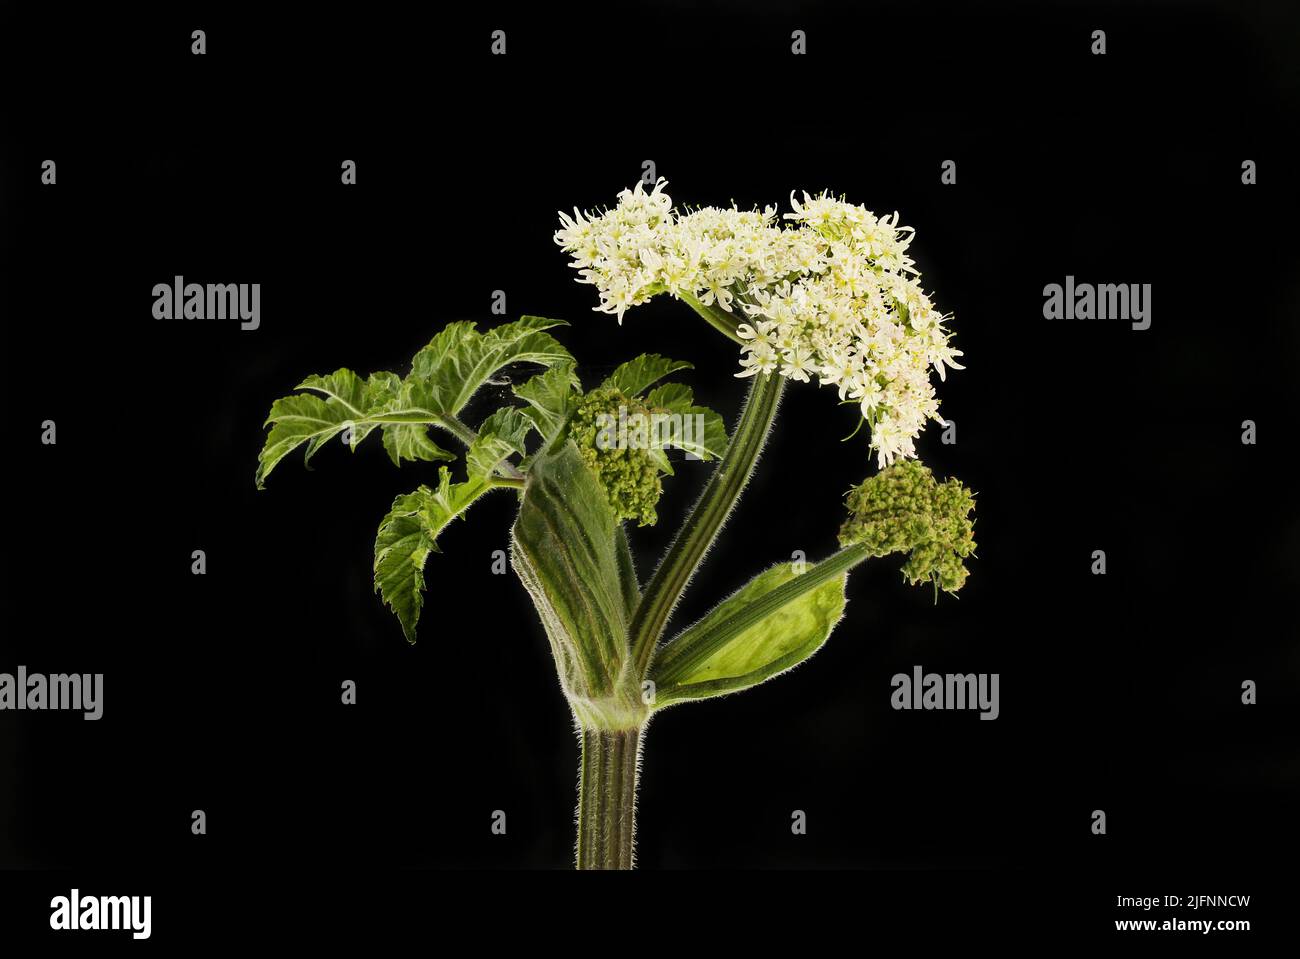 Higos gigantes, Heracleum mantegazzianum, flores y follaje aislados contra el negro Foto de stock